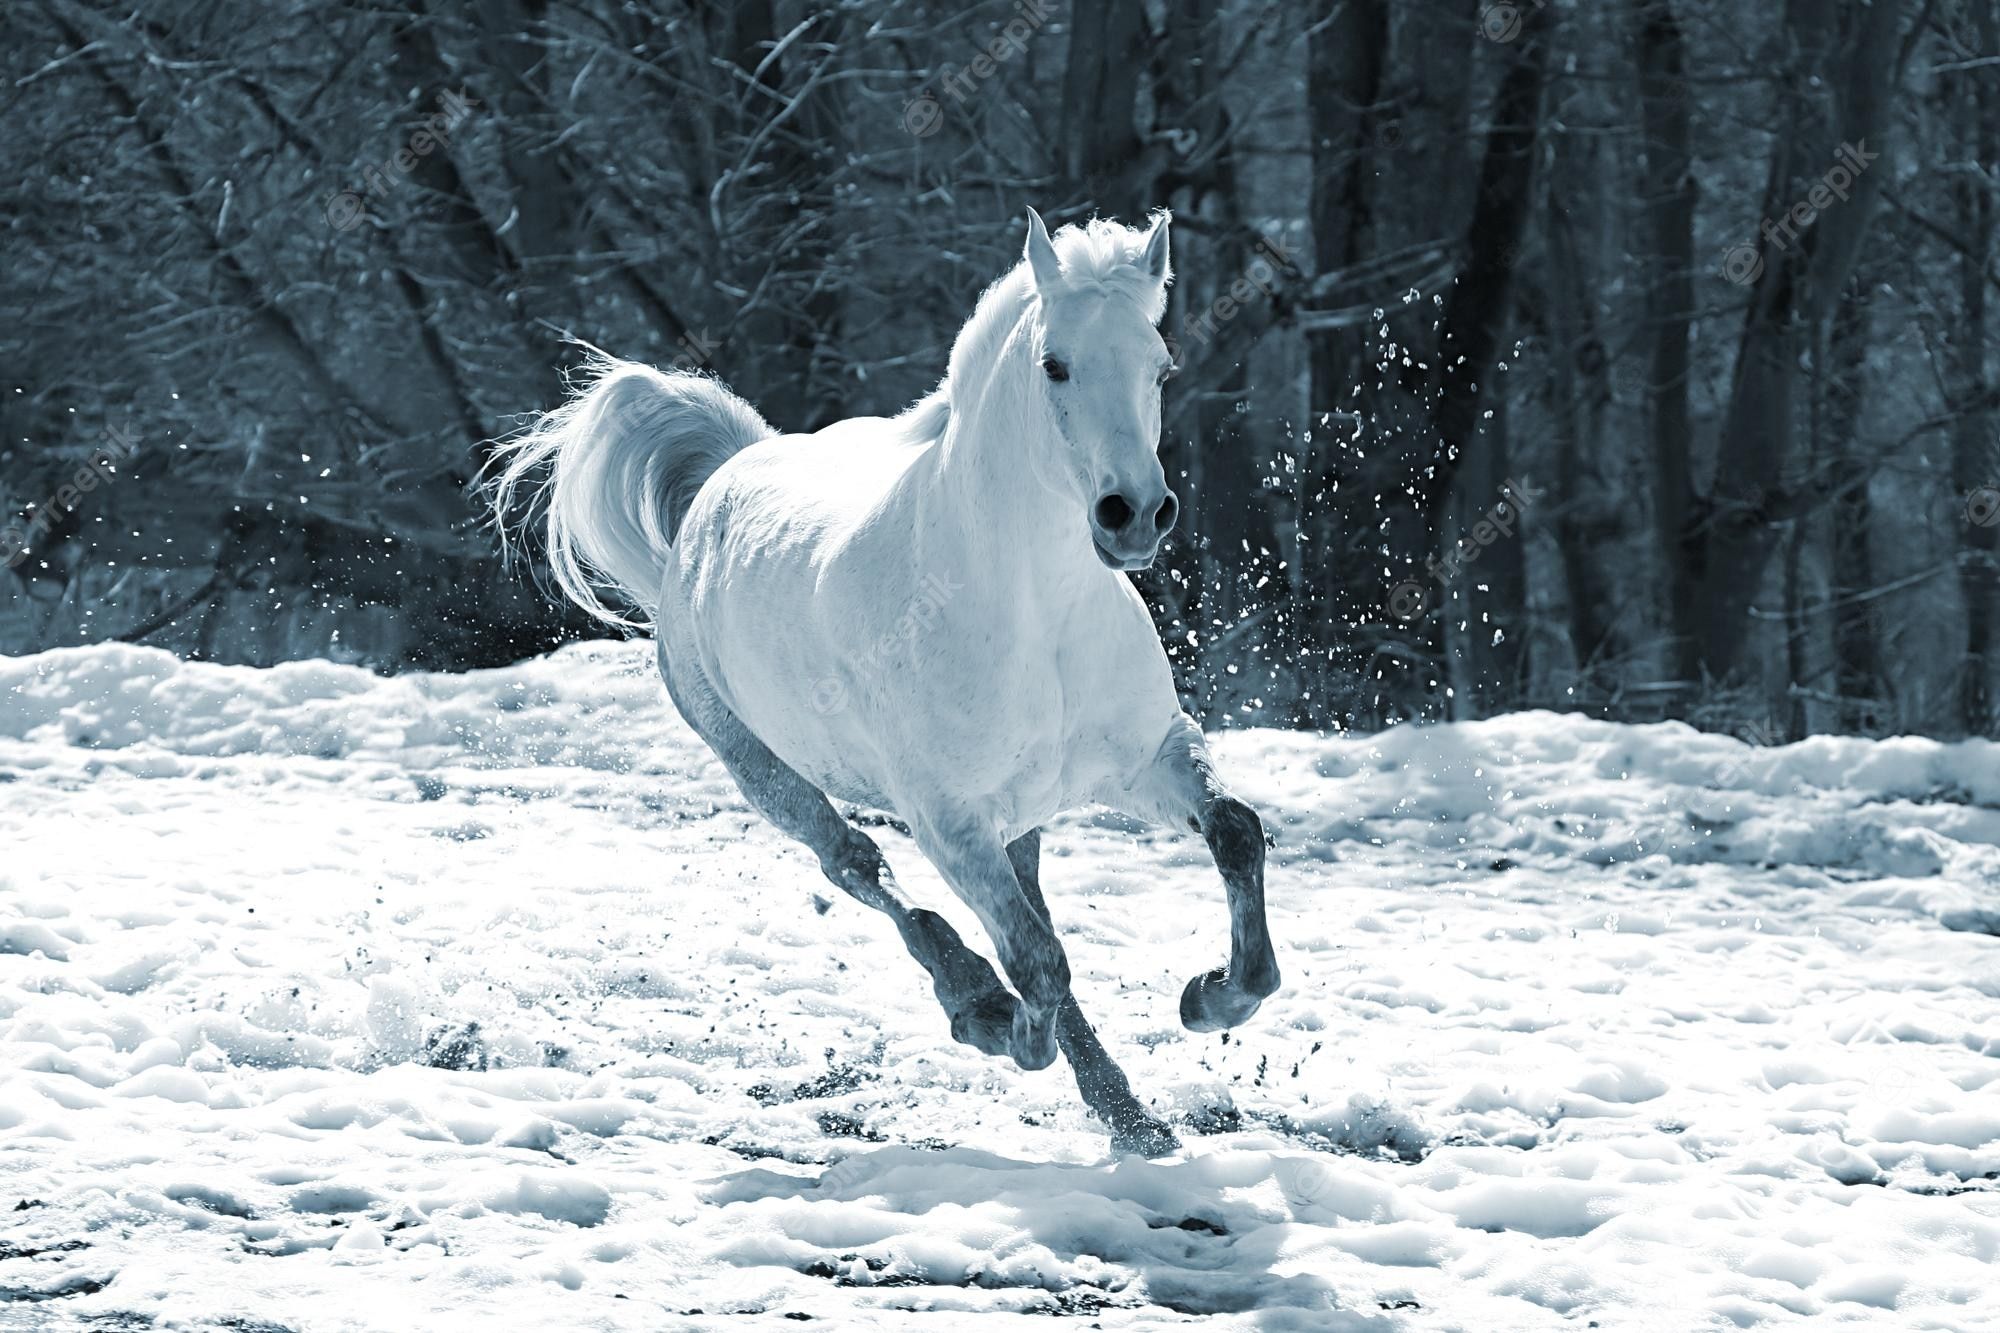  Pferde Im Schnee Hintergrundbild 2000x1333. Fotos Winter, Über 68.000 hochqualitative kostenlose Stockfotos